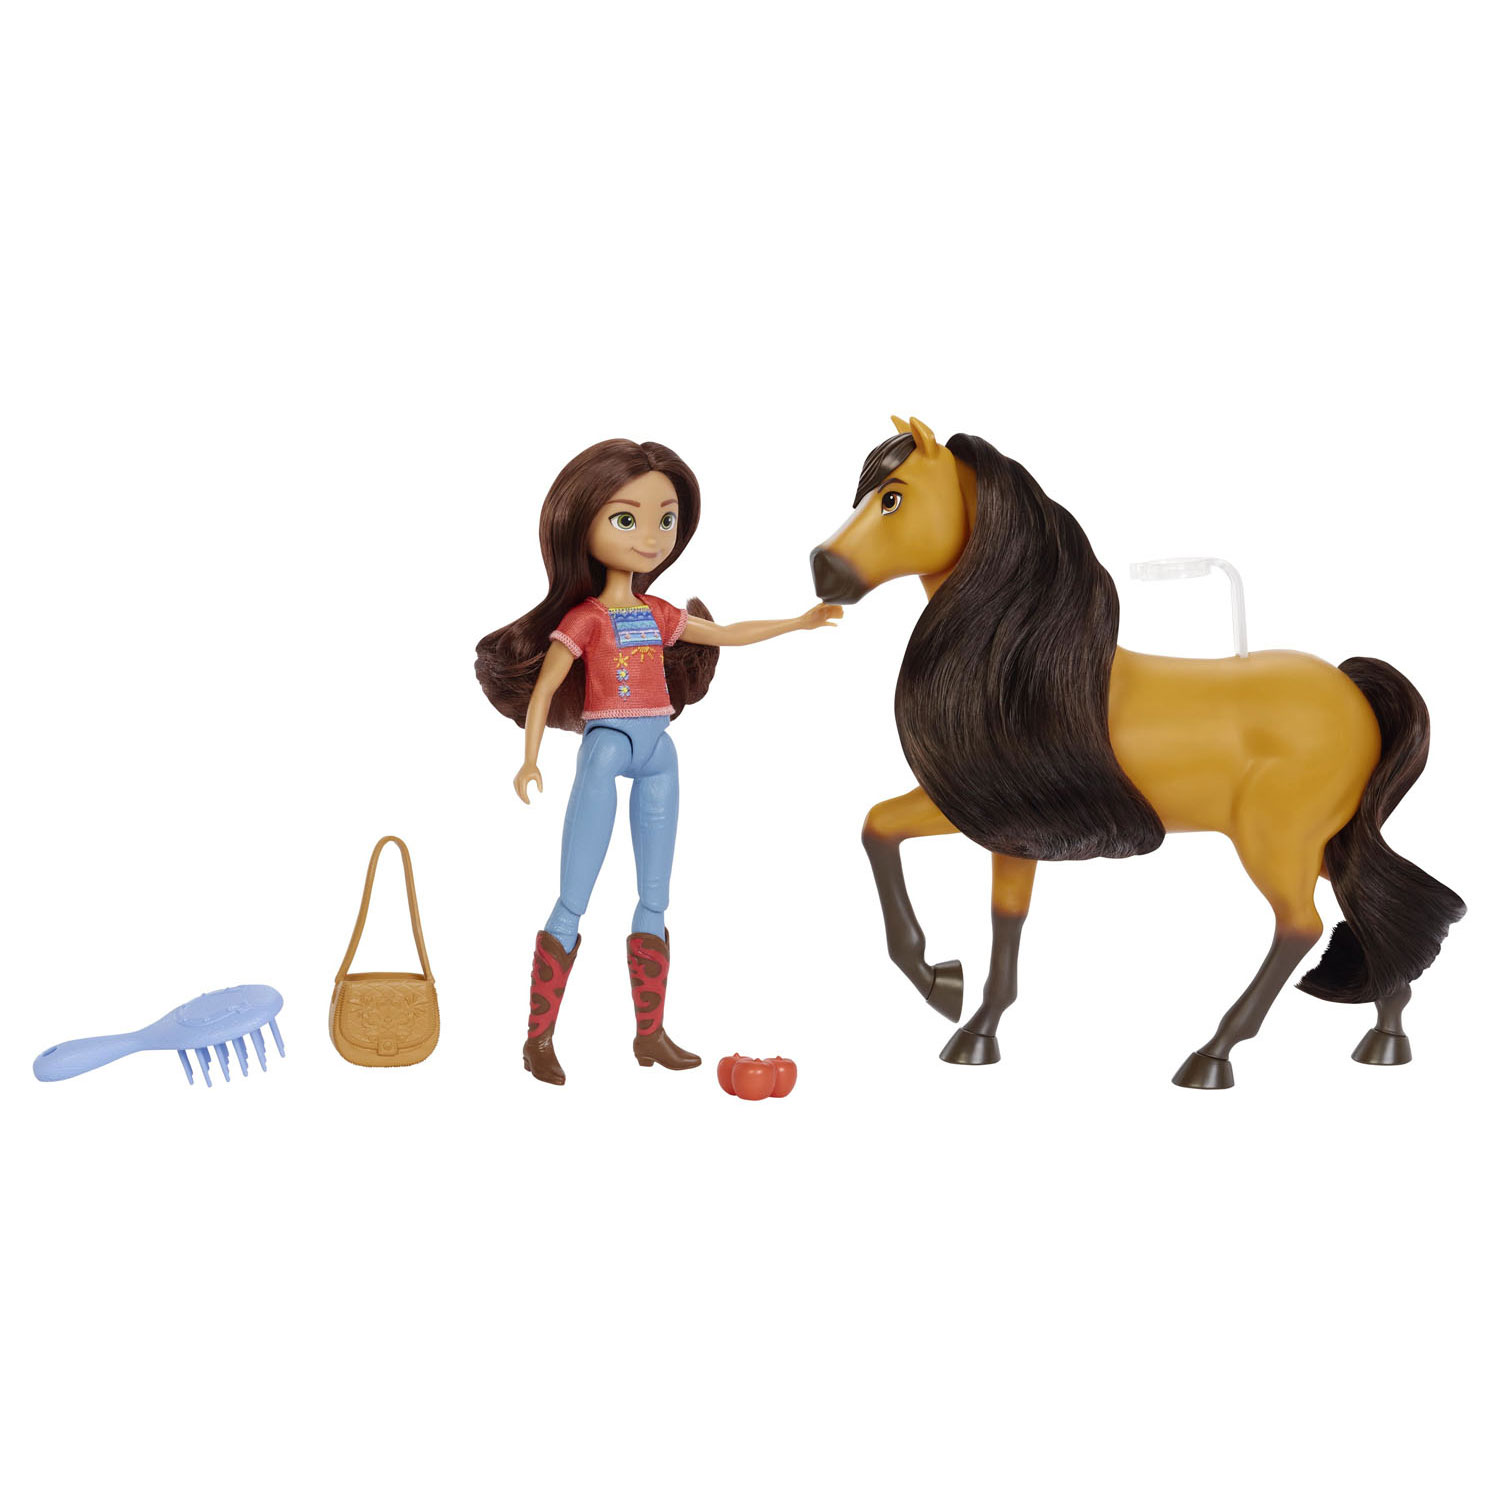 tsunami Correspondentie Tarief Spirit - Lucky and Spirit Toy Figures | Thimble Toys